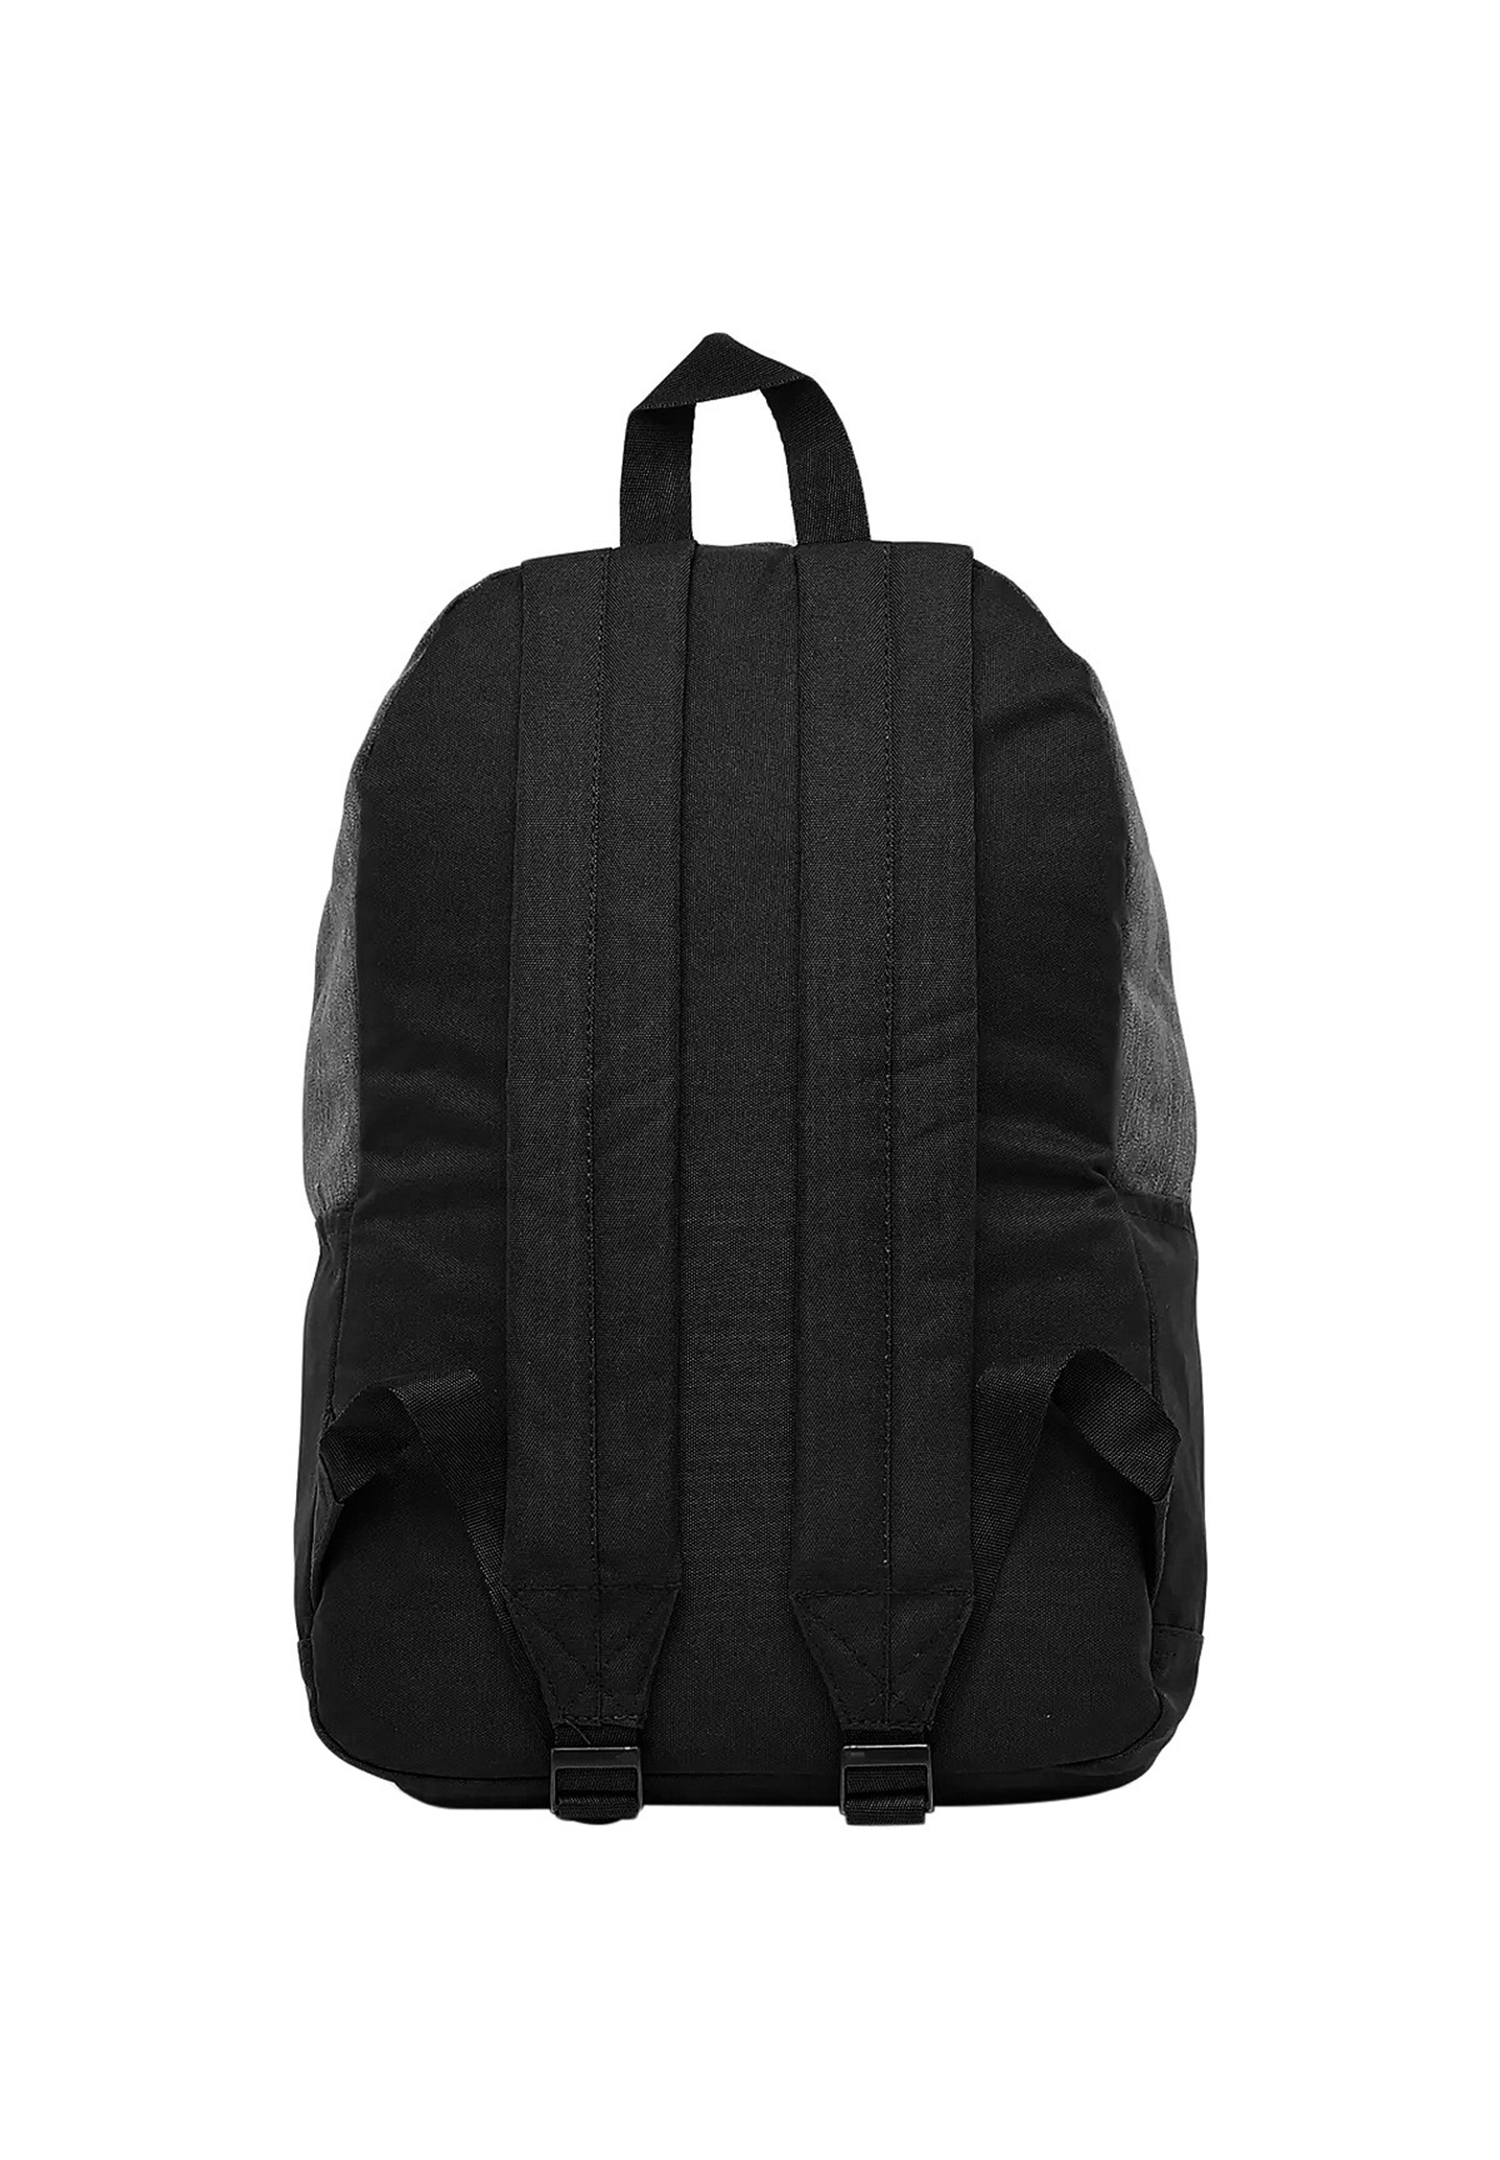 Ellesse Regent Backpack Rucksack Sport Freizeit Reise Schule SAAY0540 schwarz/grau